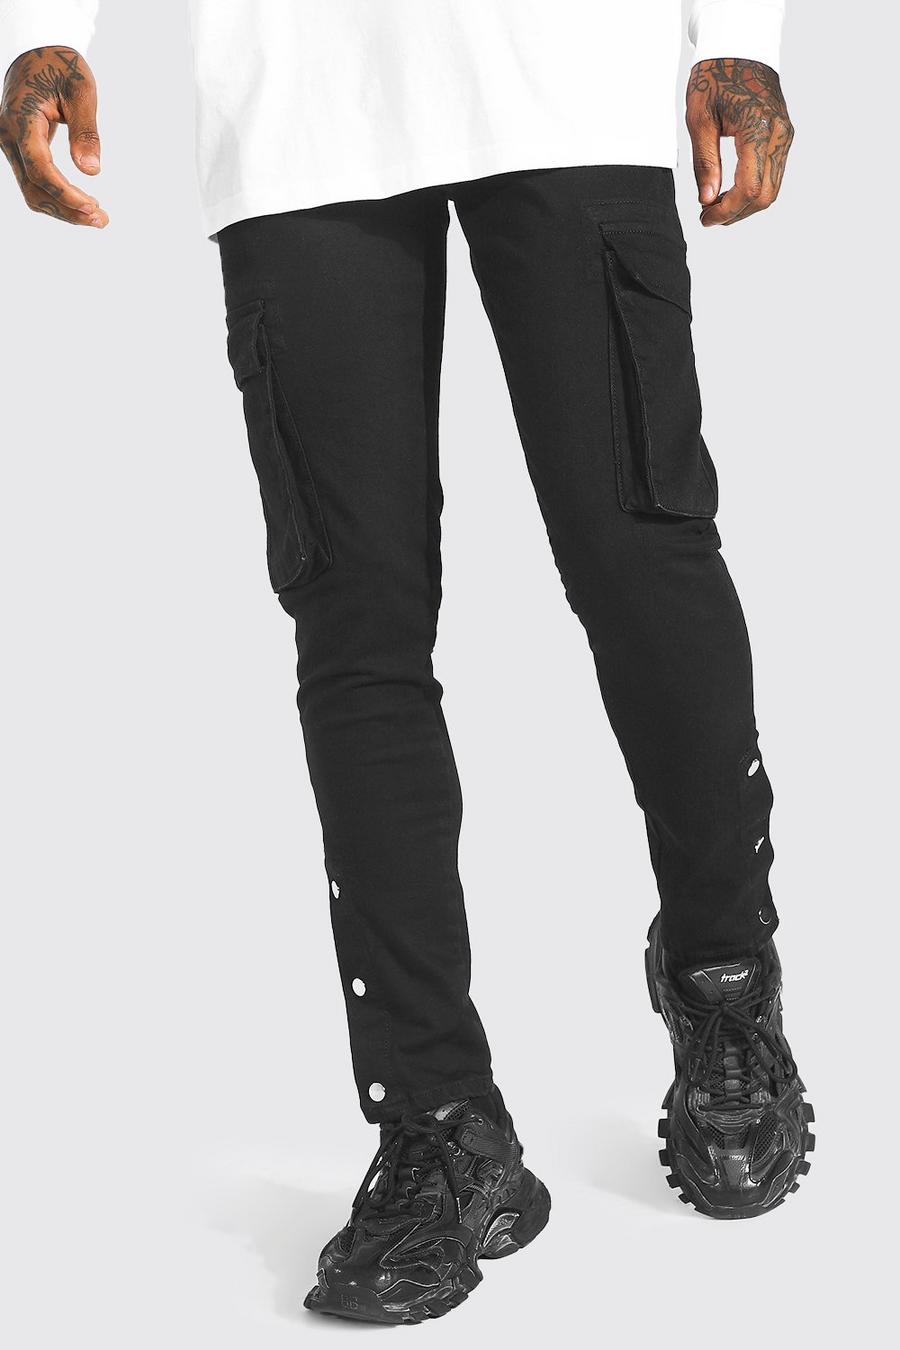 שחור אמיתי סקיני ג'ינס דגמ"ח נמתח עם תיקתקים ושיבוץ ריינסטון image number 1